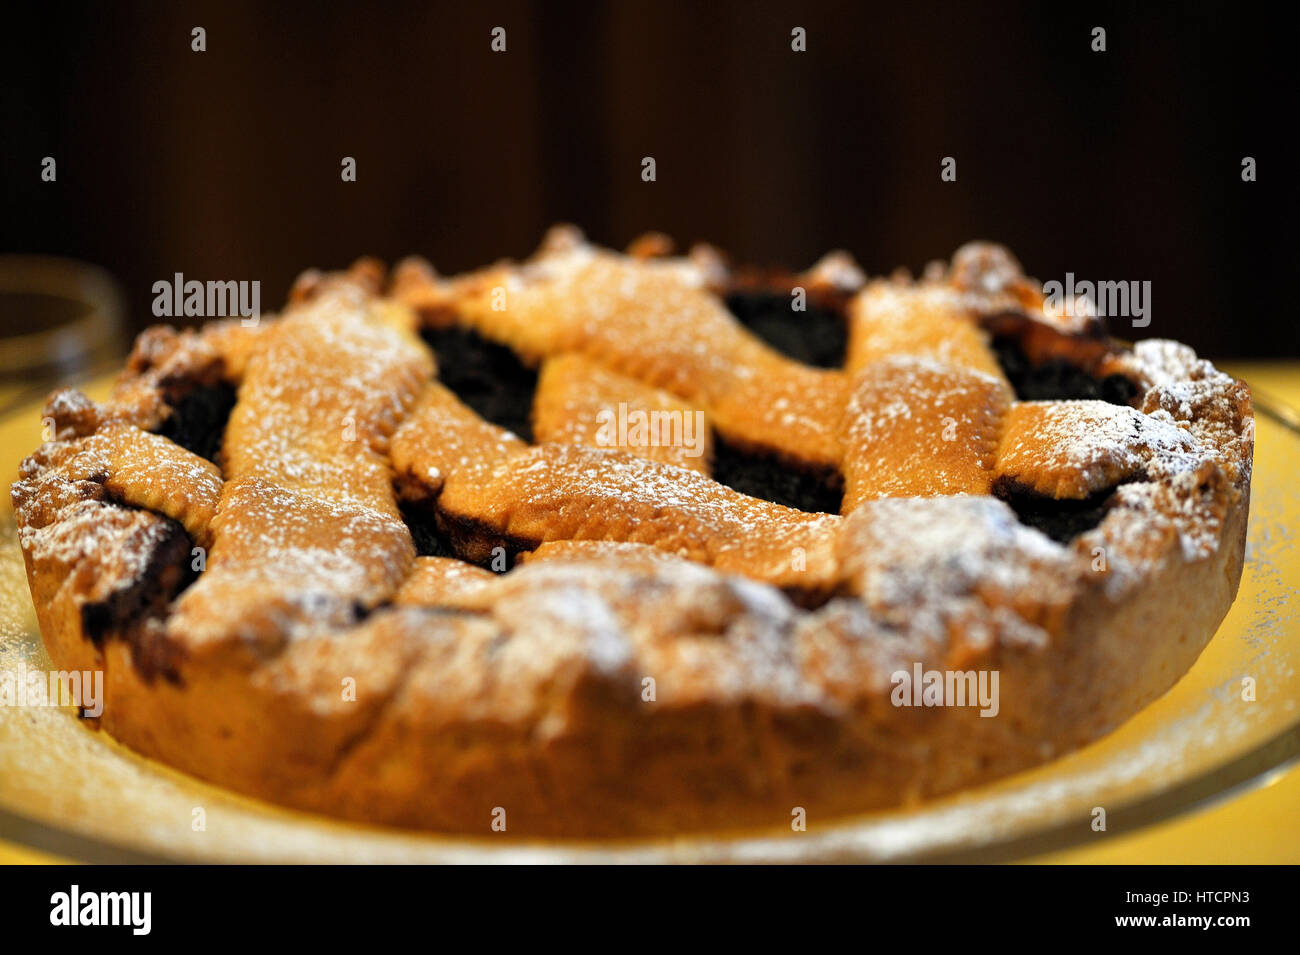 Homemade jam tart on the table of an Italian restaurant Stock Photo